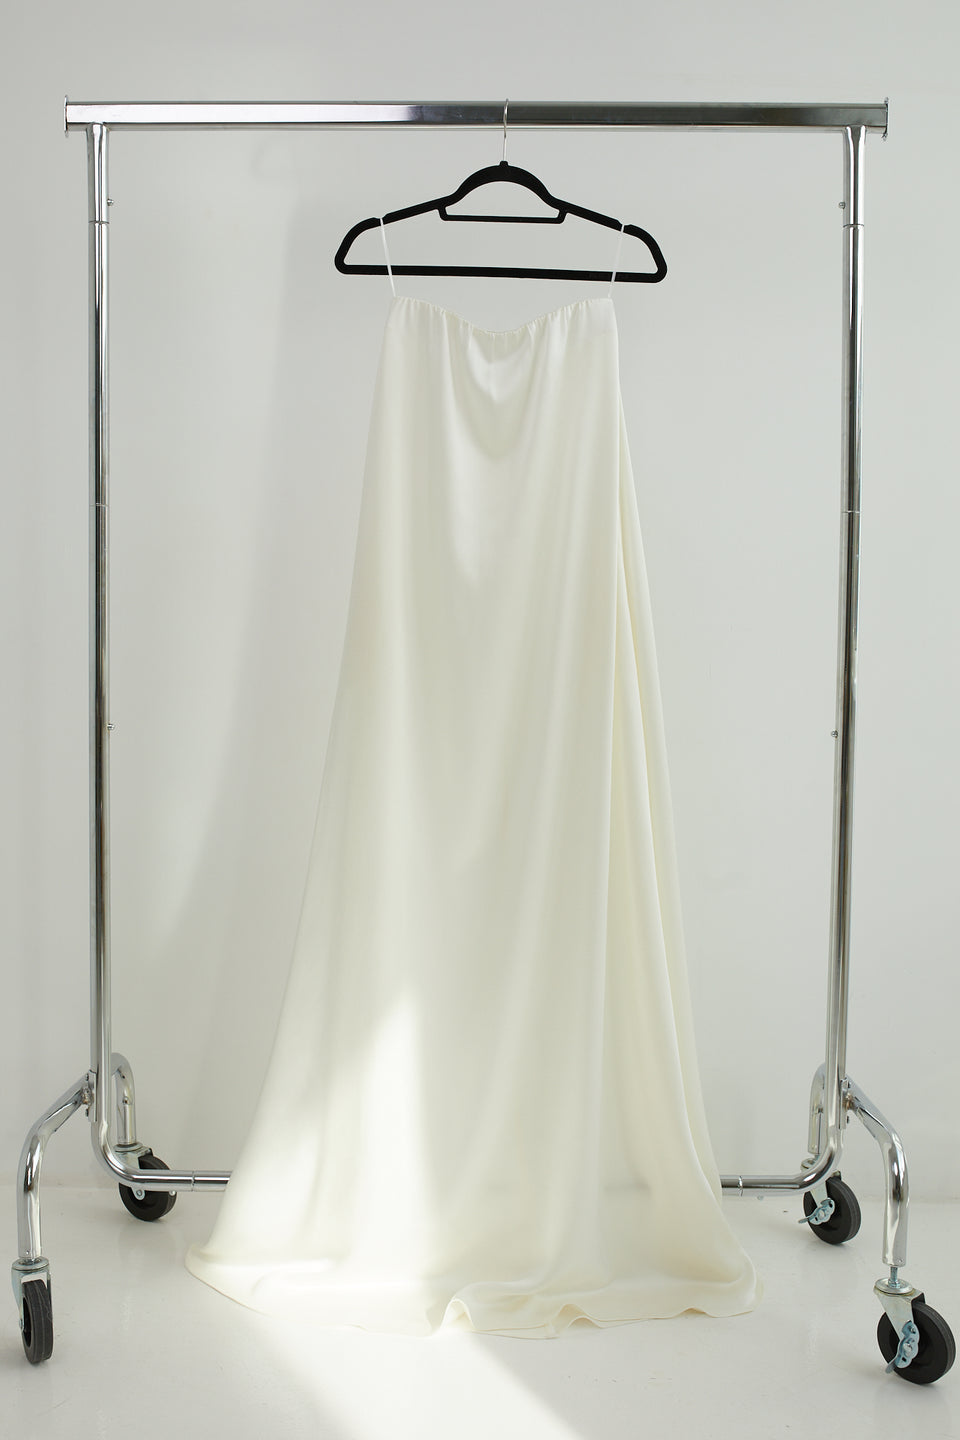 White Long Dress